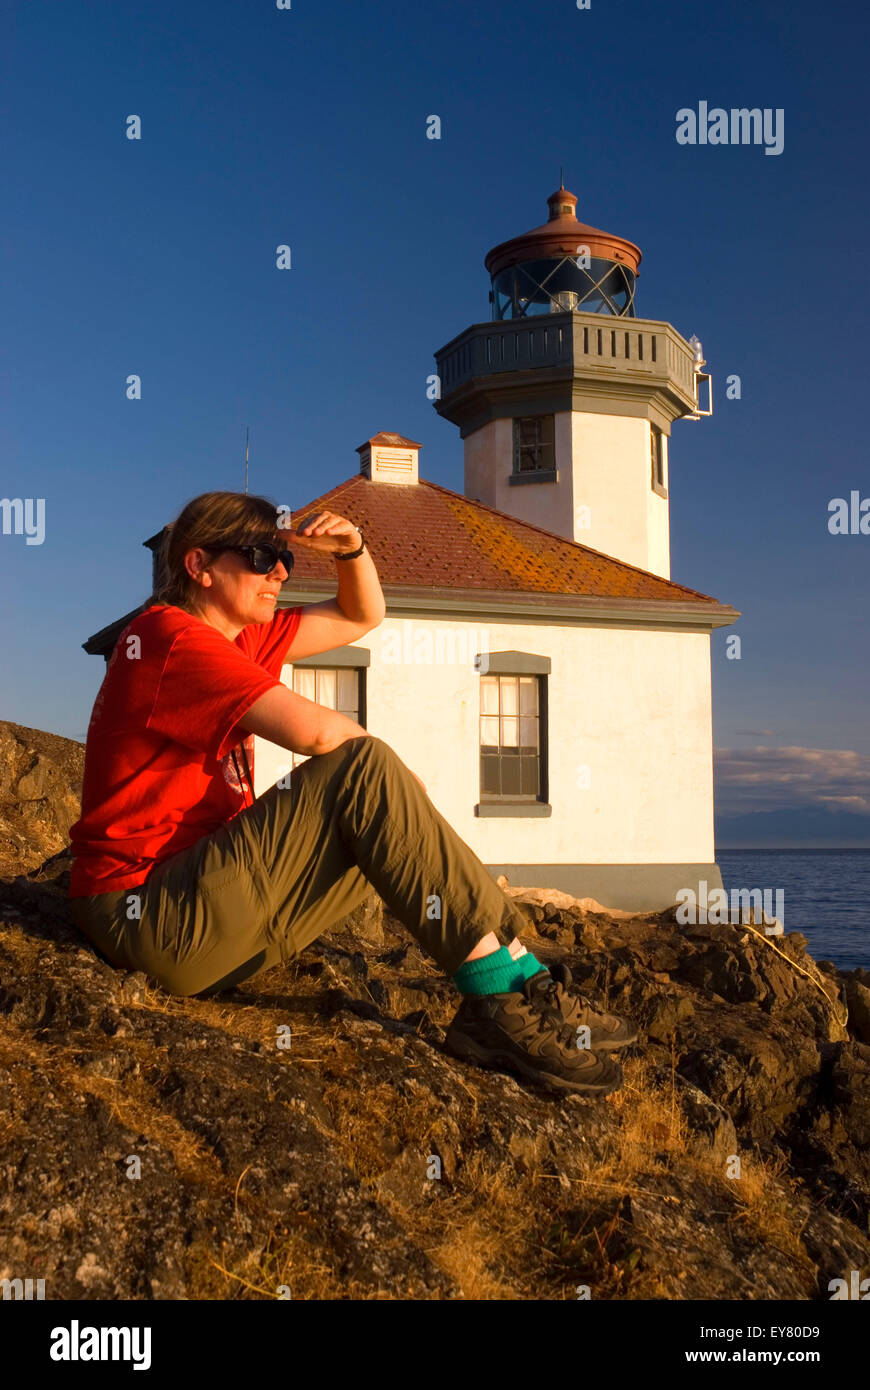 Lime Kiln Lighthouse, Lime Kiln Pt State Park, Washington Stock Photo